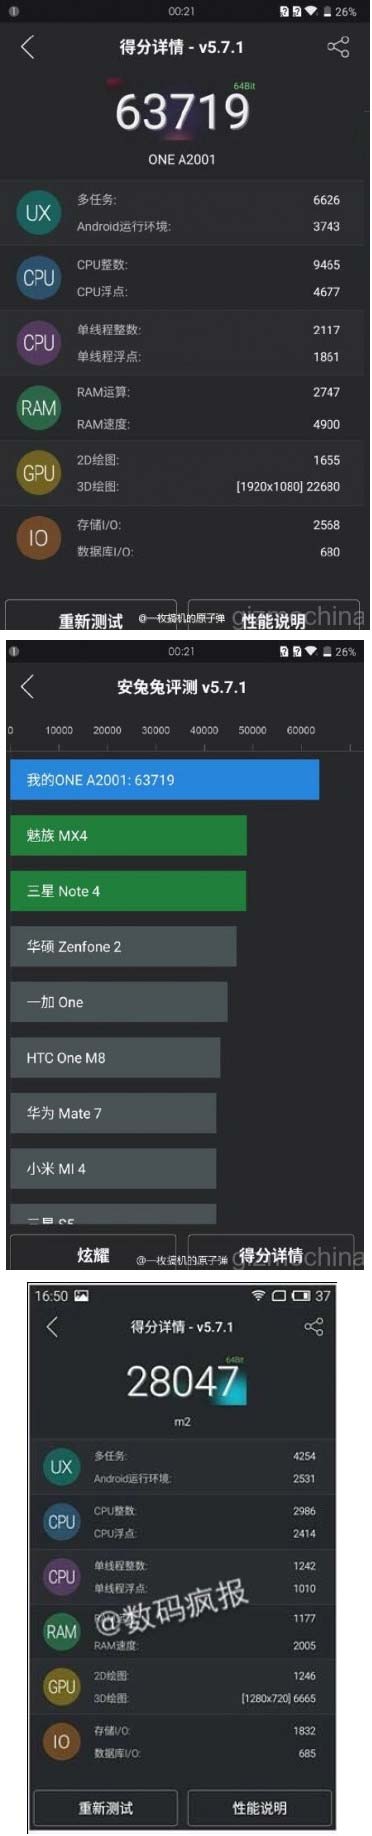 Результаты выступления OnePlus 2 и Meizu M2 в AnTuTu